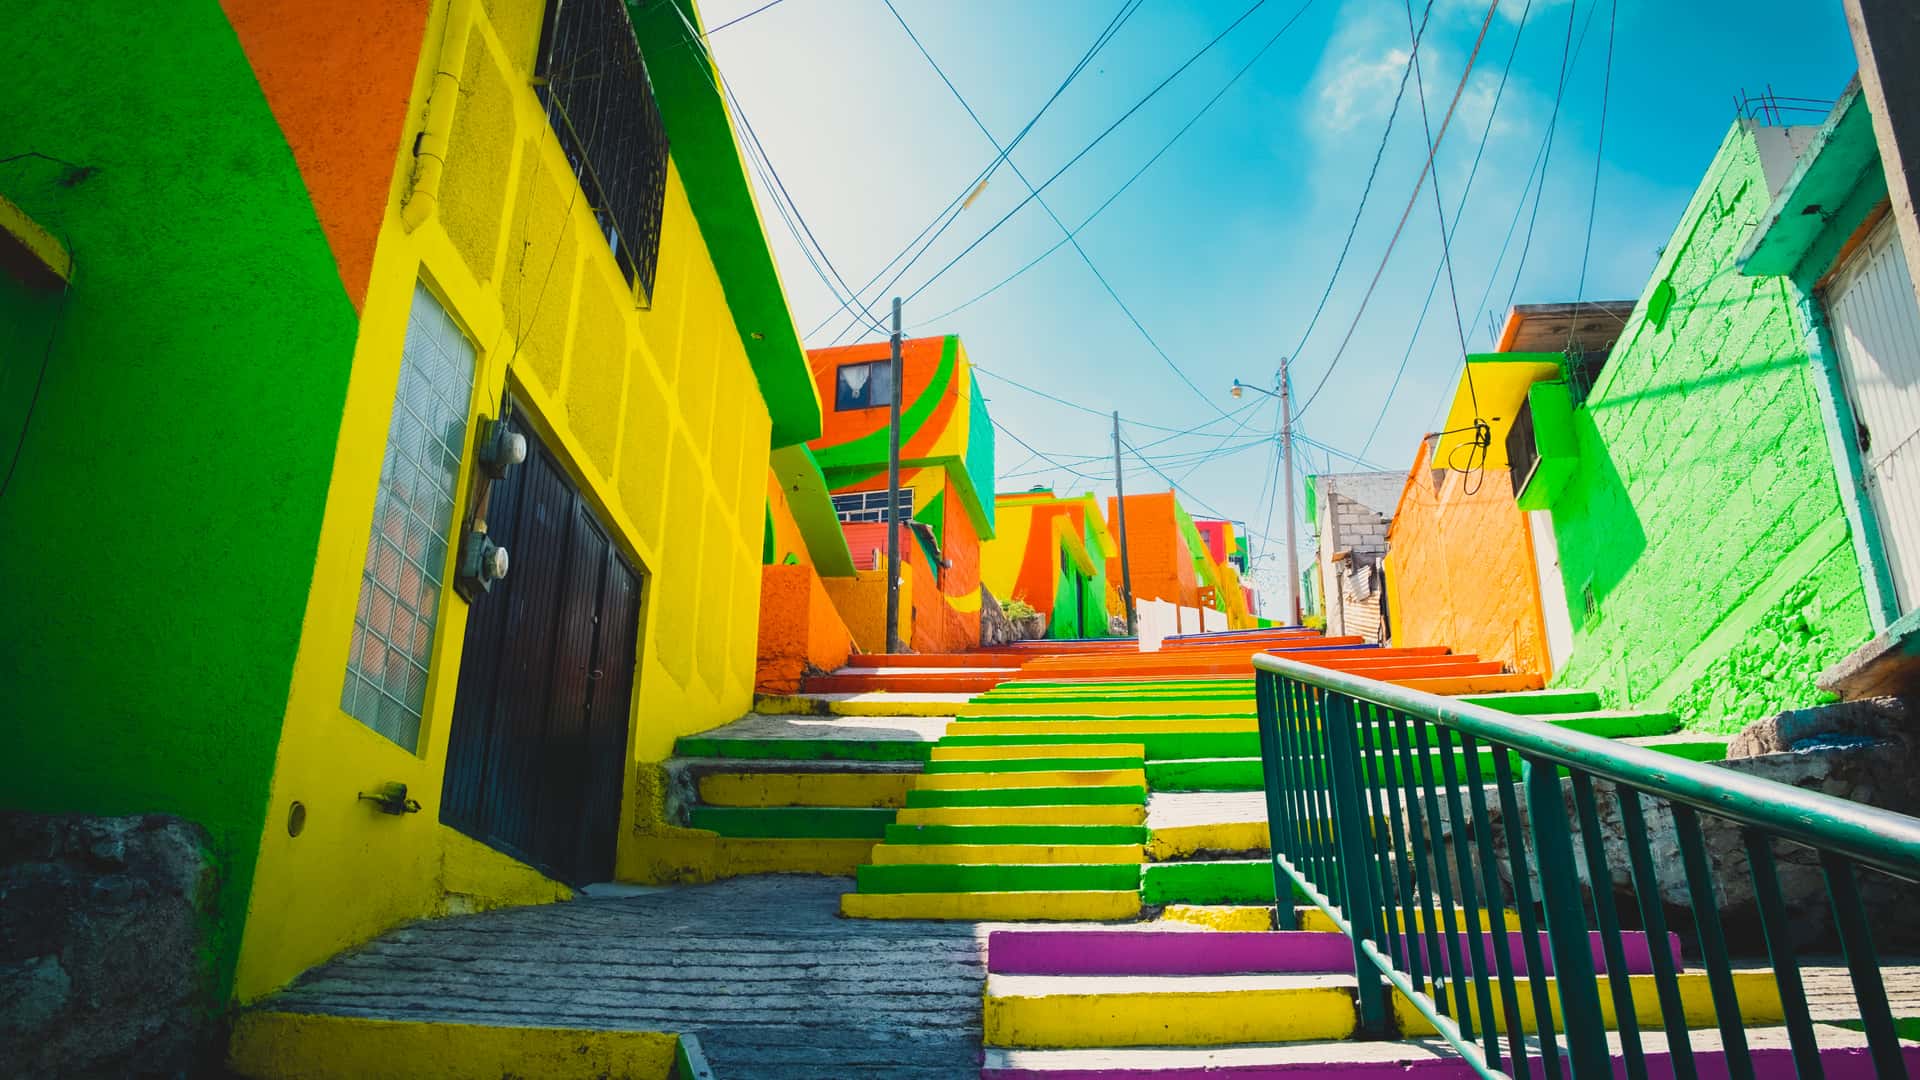 Calles muy coloridas de la ciudad de Pachuca en Mexico donde puedes encontrar sucursales de telcel